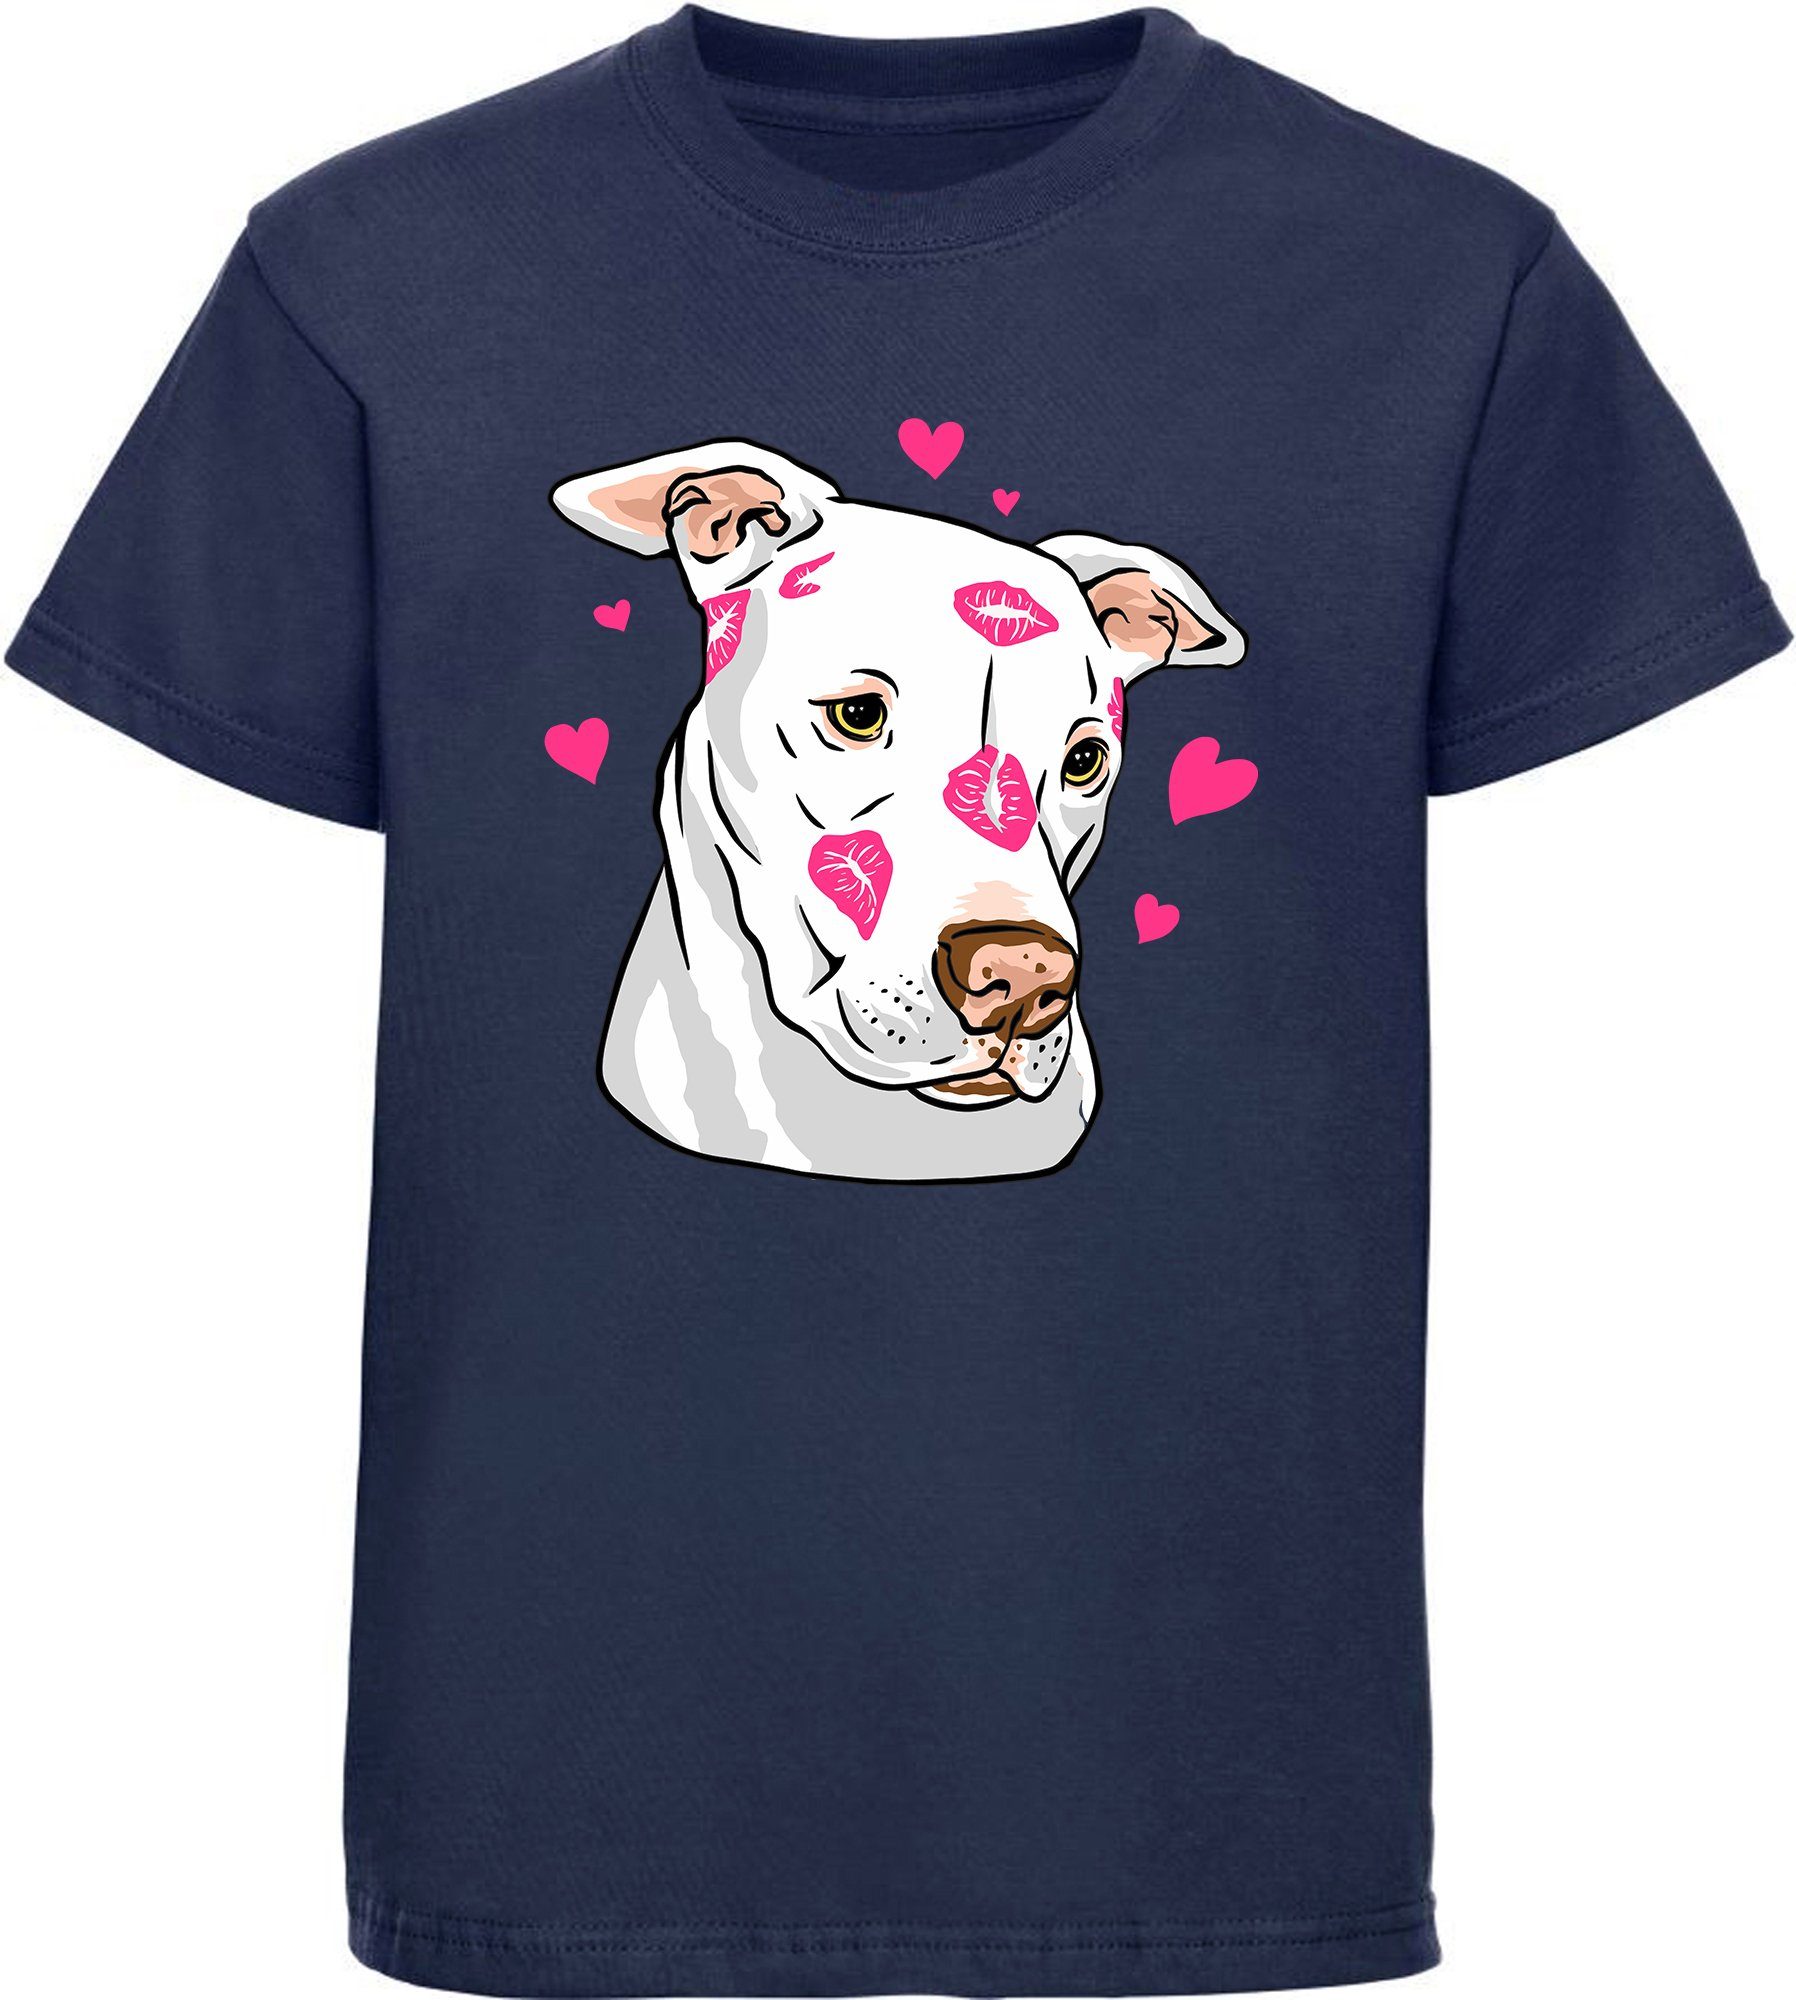 MyDesign24 Print-Shirt bedrucktes Kinder Hunde T-Shirt - Pitbull mit Herzen Baumwollshirt mit Aufdruck, i229 navy blau